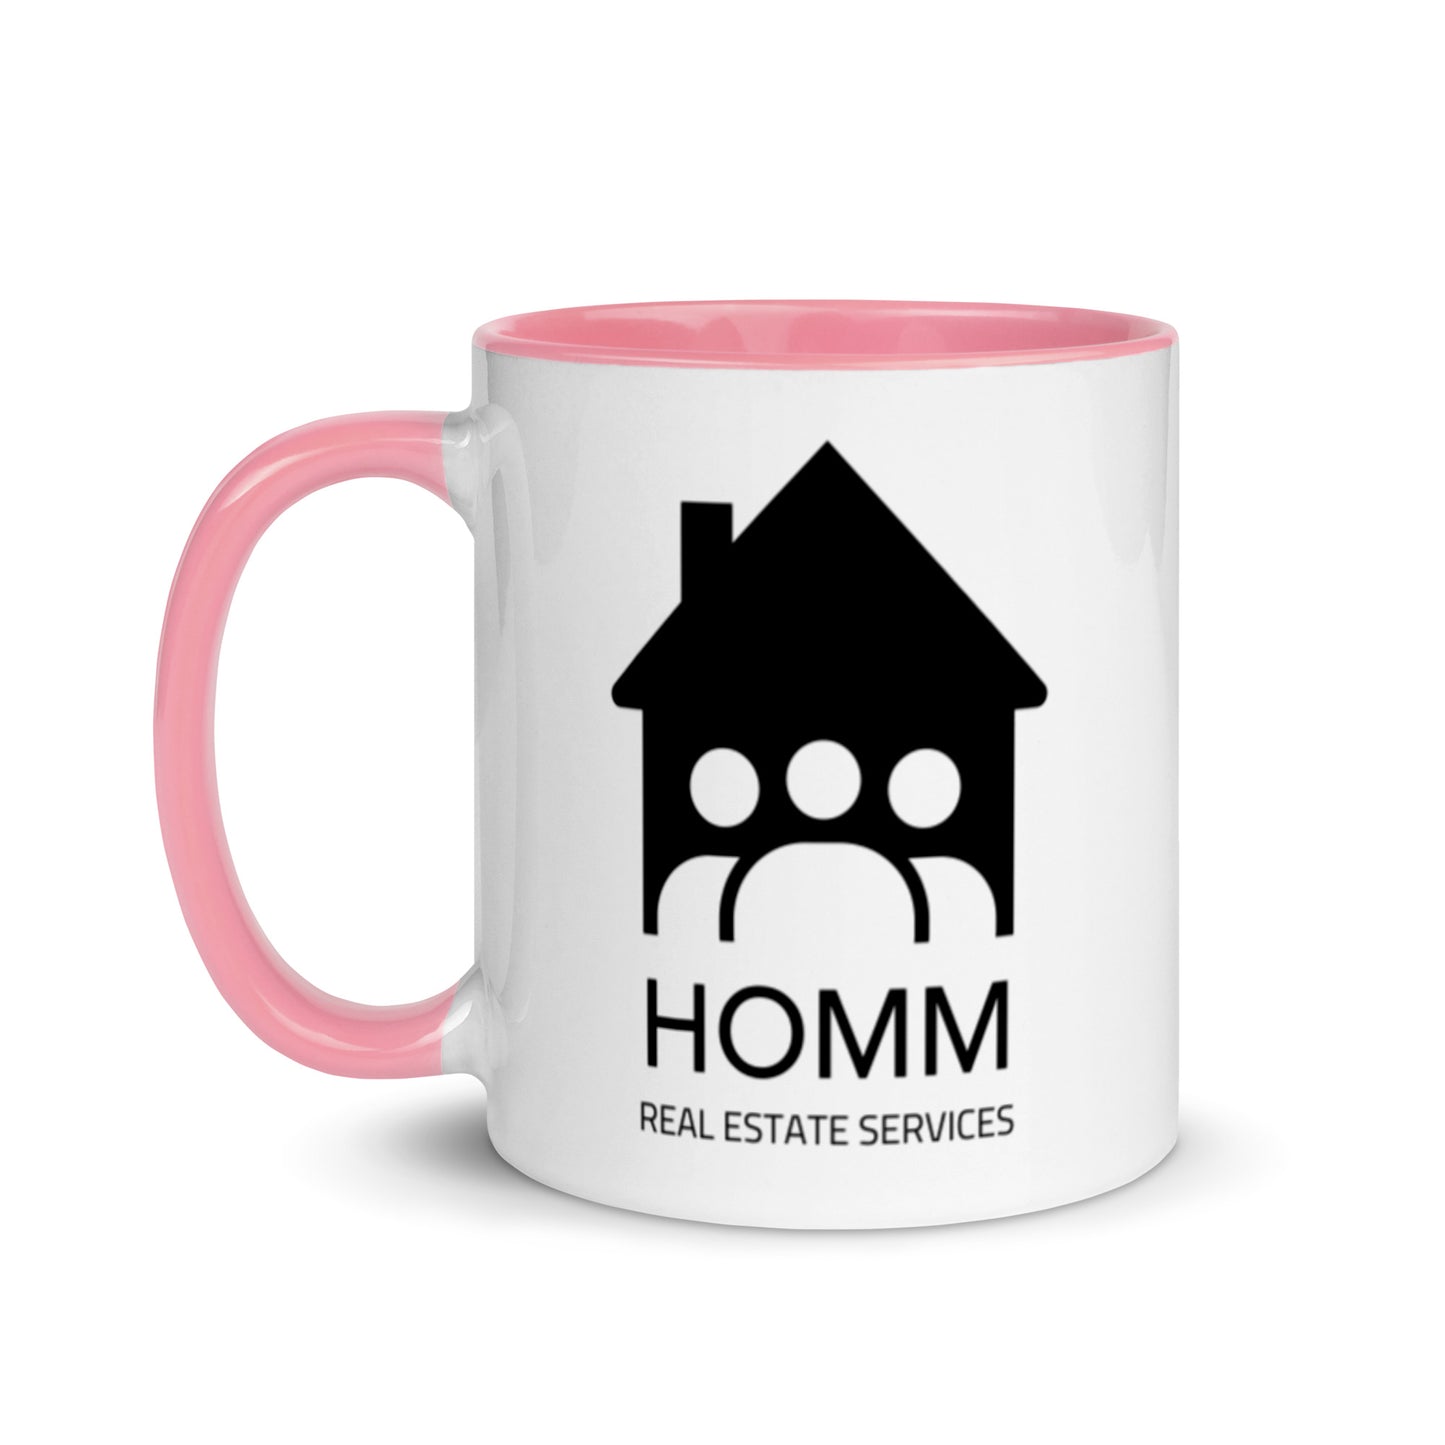 HOMM Mug - Choose Your Color